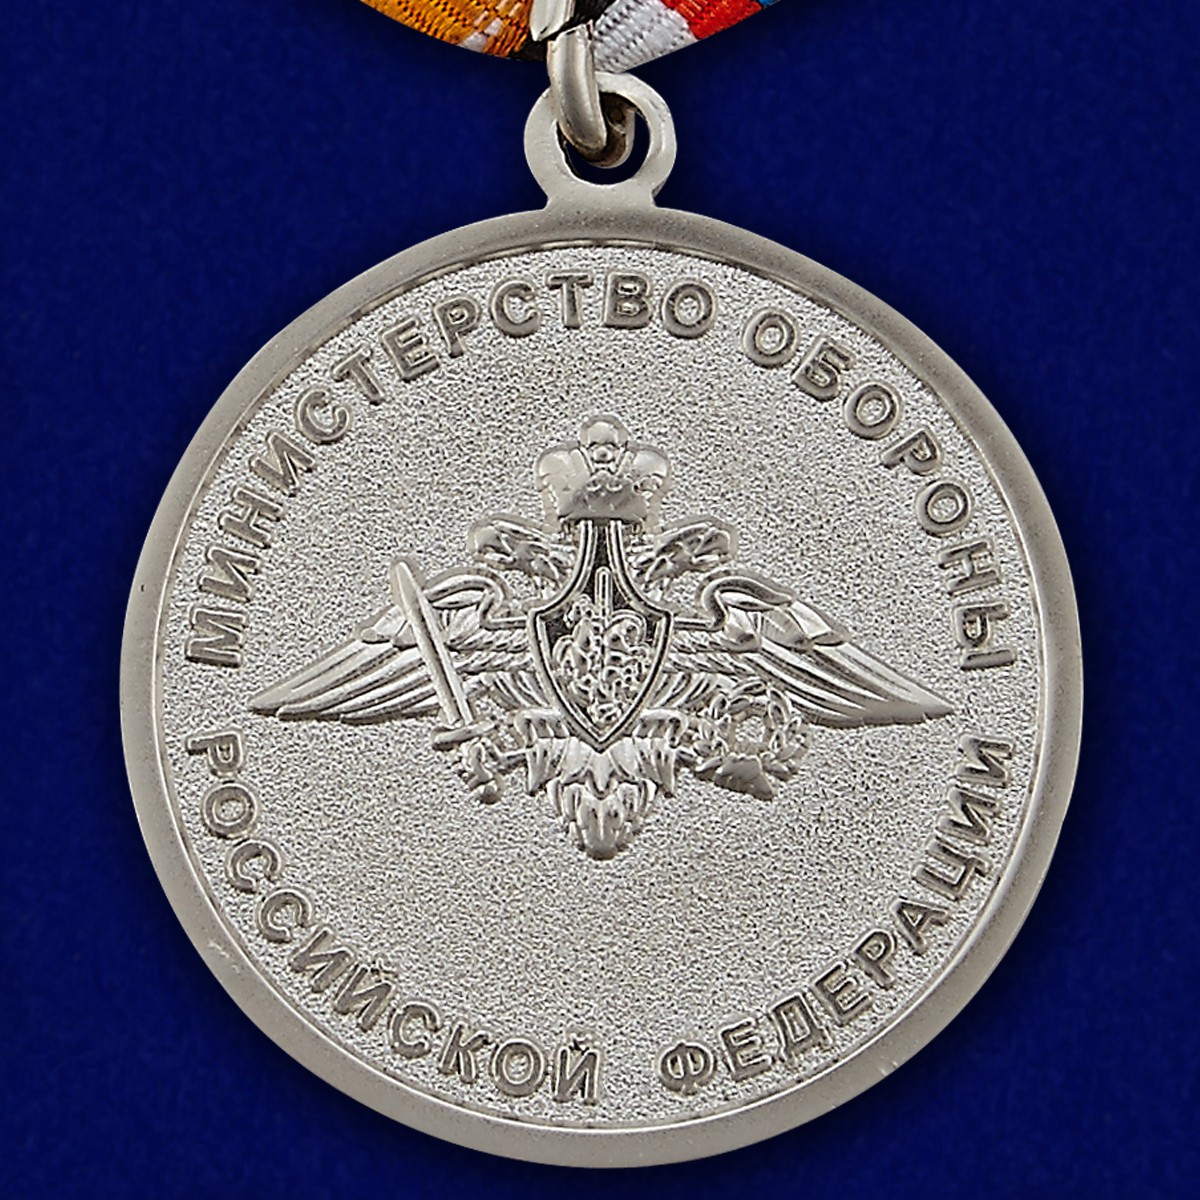 Медаль "Адмирал Кузнецов" МО РФ 